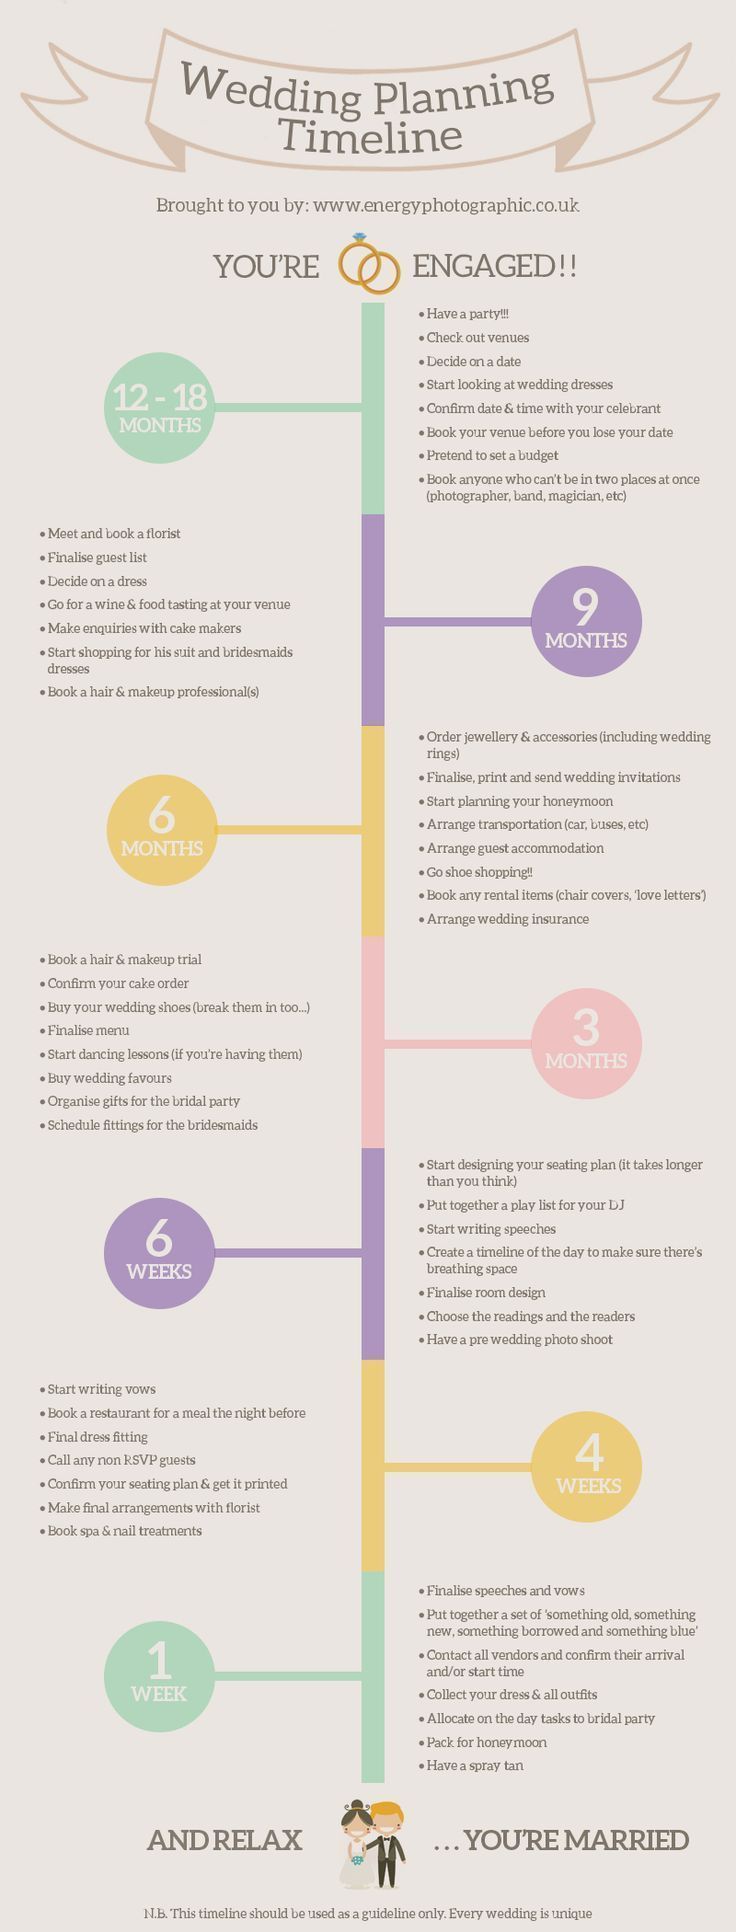 One Year Until Wedding Quotes – 12 Month Wedding Checklist | Wedding Planning - One Year Until Wedding Quotes – 12 Month Wedding Checklist | Wedding Planning -   15 diy Wedding planner ideas